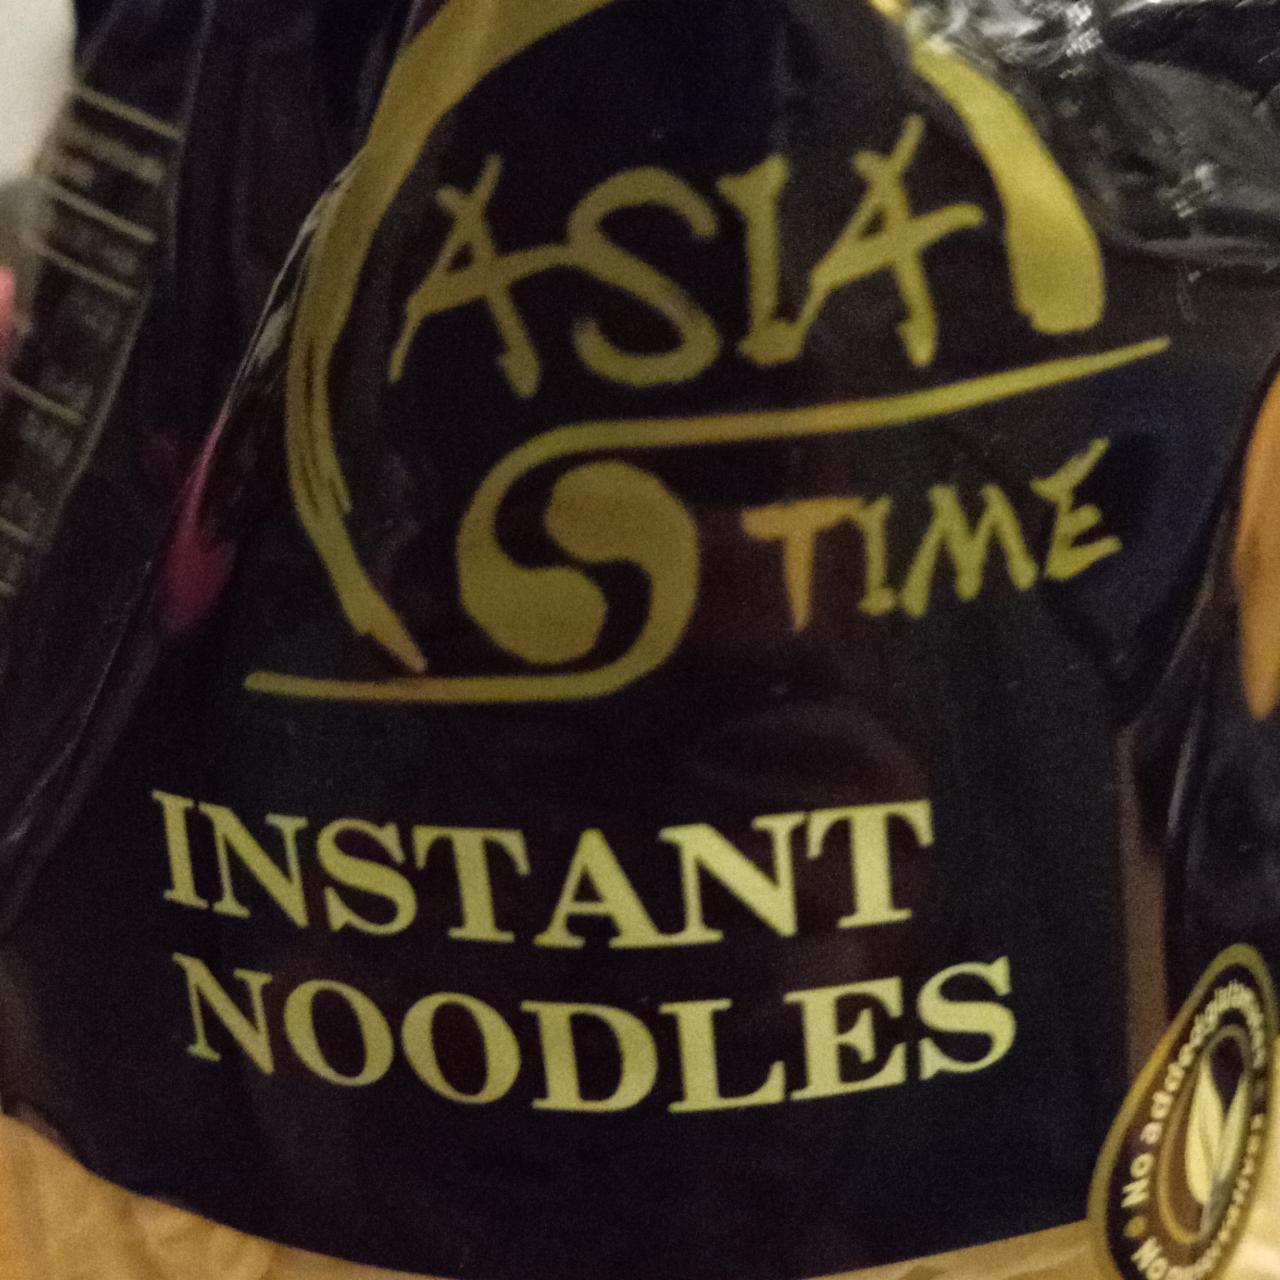 Fotografie - Instant Noodles Asia Time